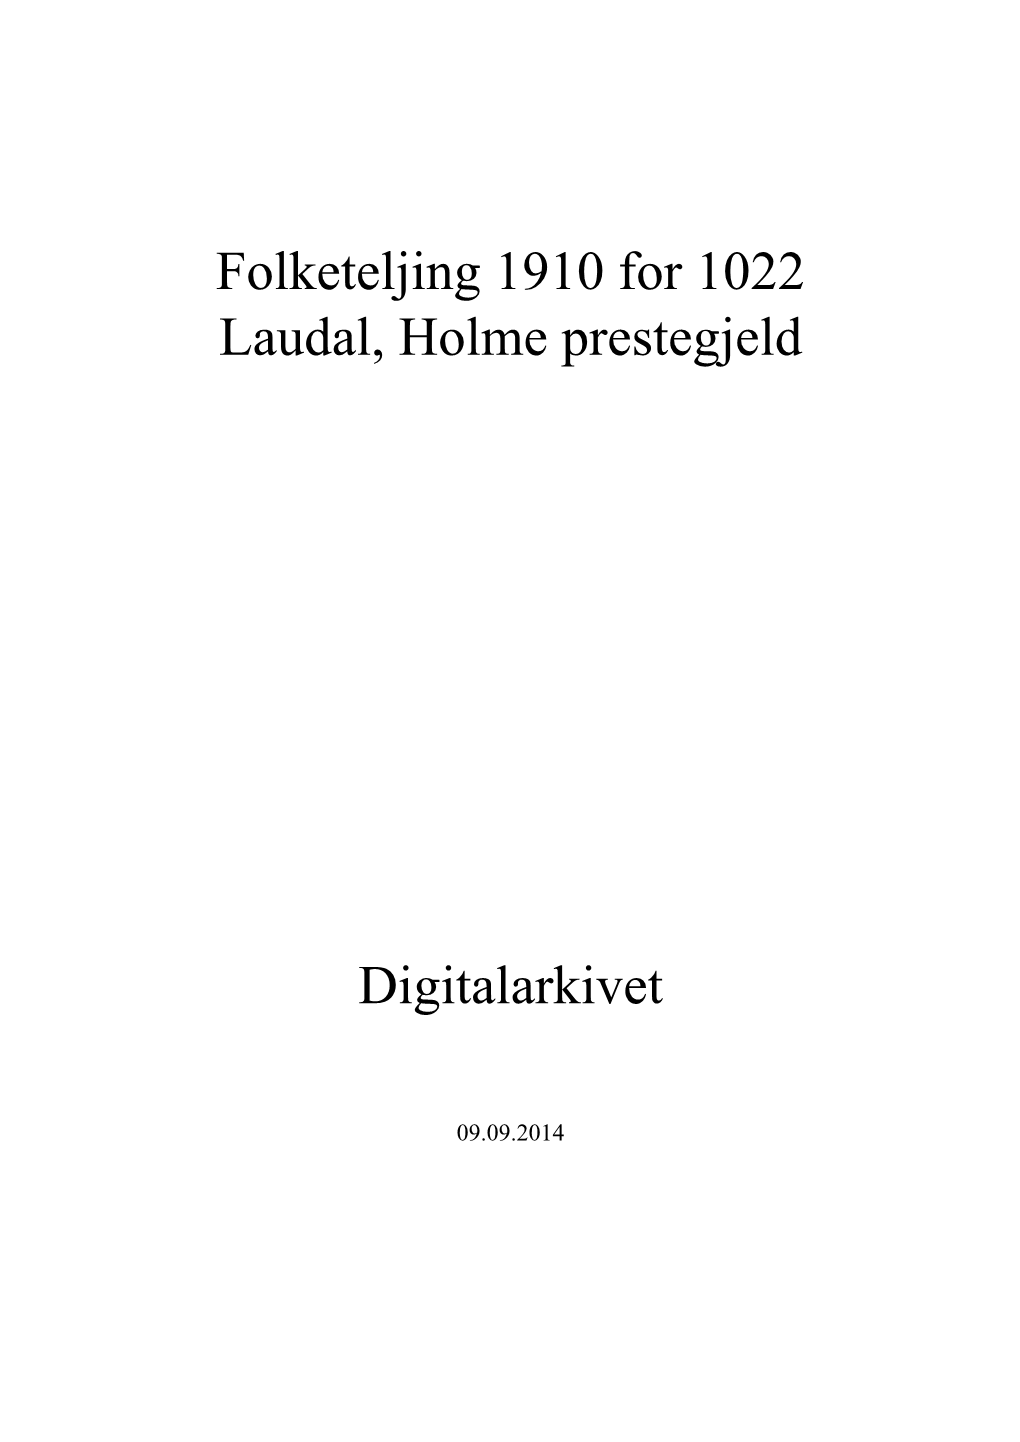 Folketeljing 1910 for 1022 Laudal, Holme Prestegjeld Digitalarkivet